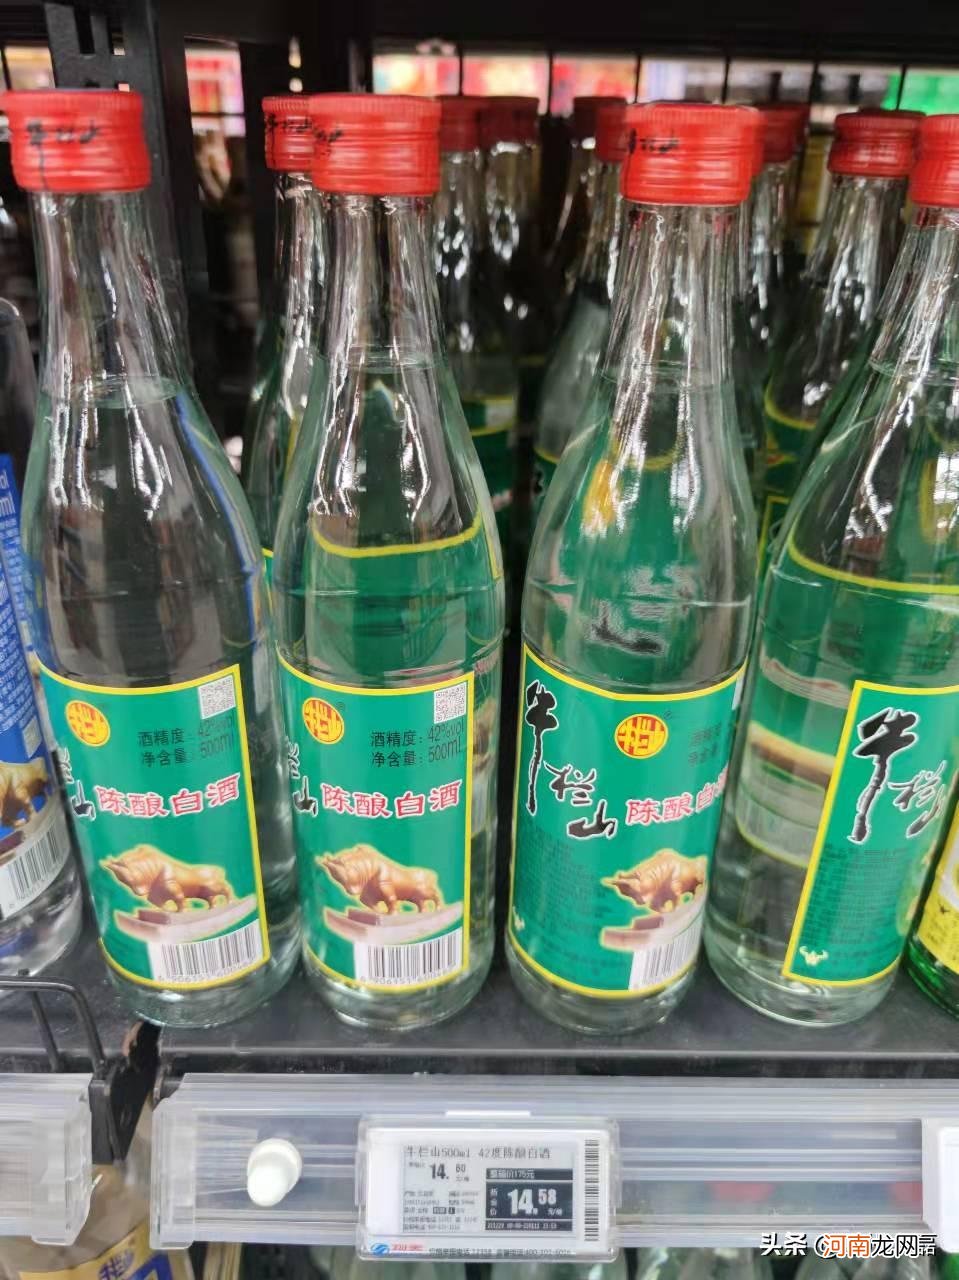 北京二锅头图片及价格表 北京二锅头酒价格表